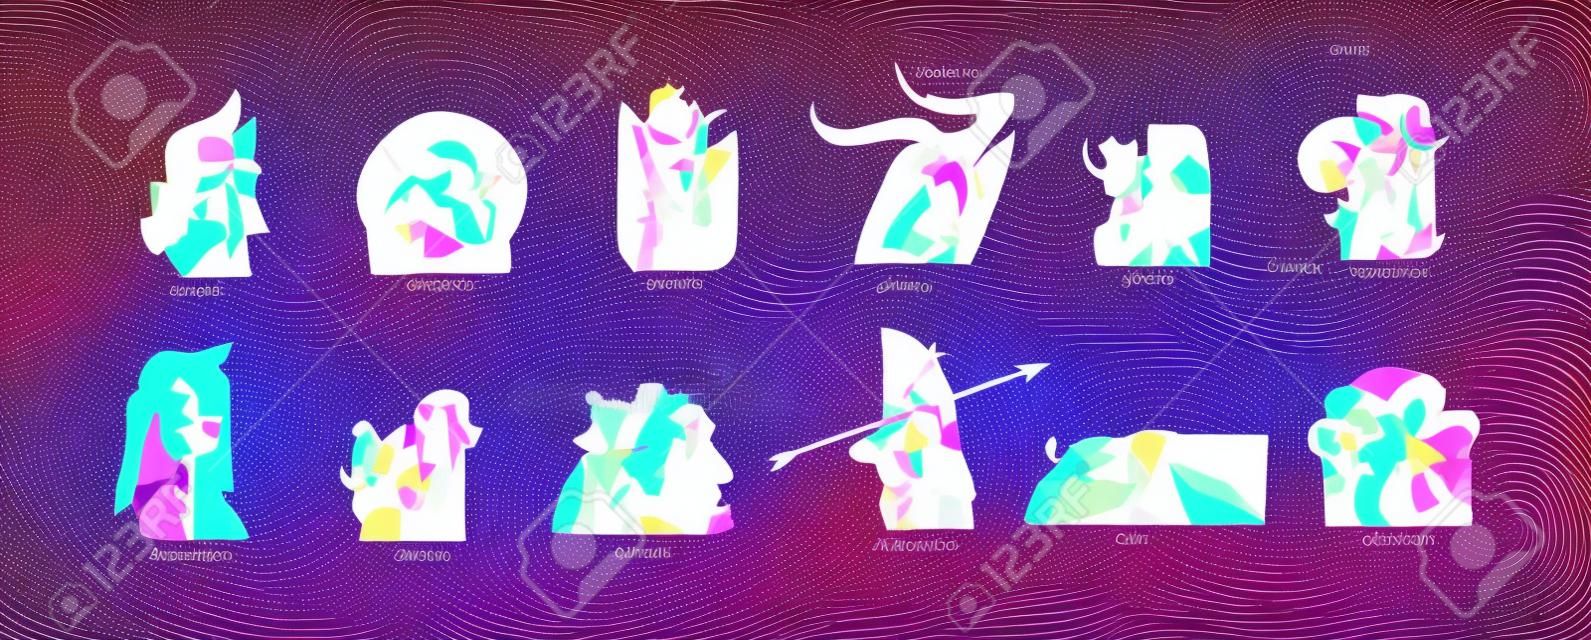 Ilustraciones gráficas abstractas de stock vectorial dibujadas a mano con conjunto de colección de símbolos de signos contemporáneos astrológicos del zodiaco, personajes femeninos mágicos de belleza, diseño boho de imágenes prediseñadas, concepto de astrología femenina.